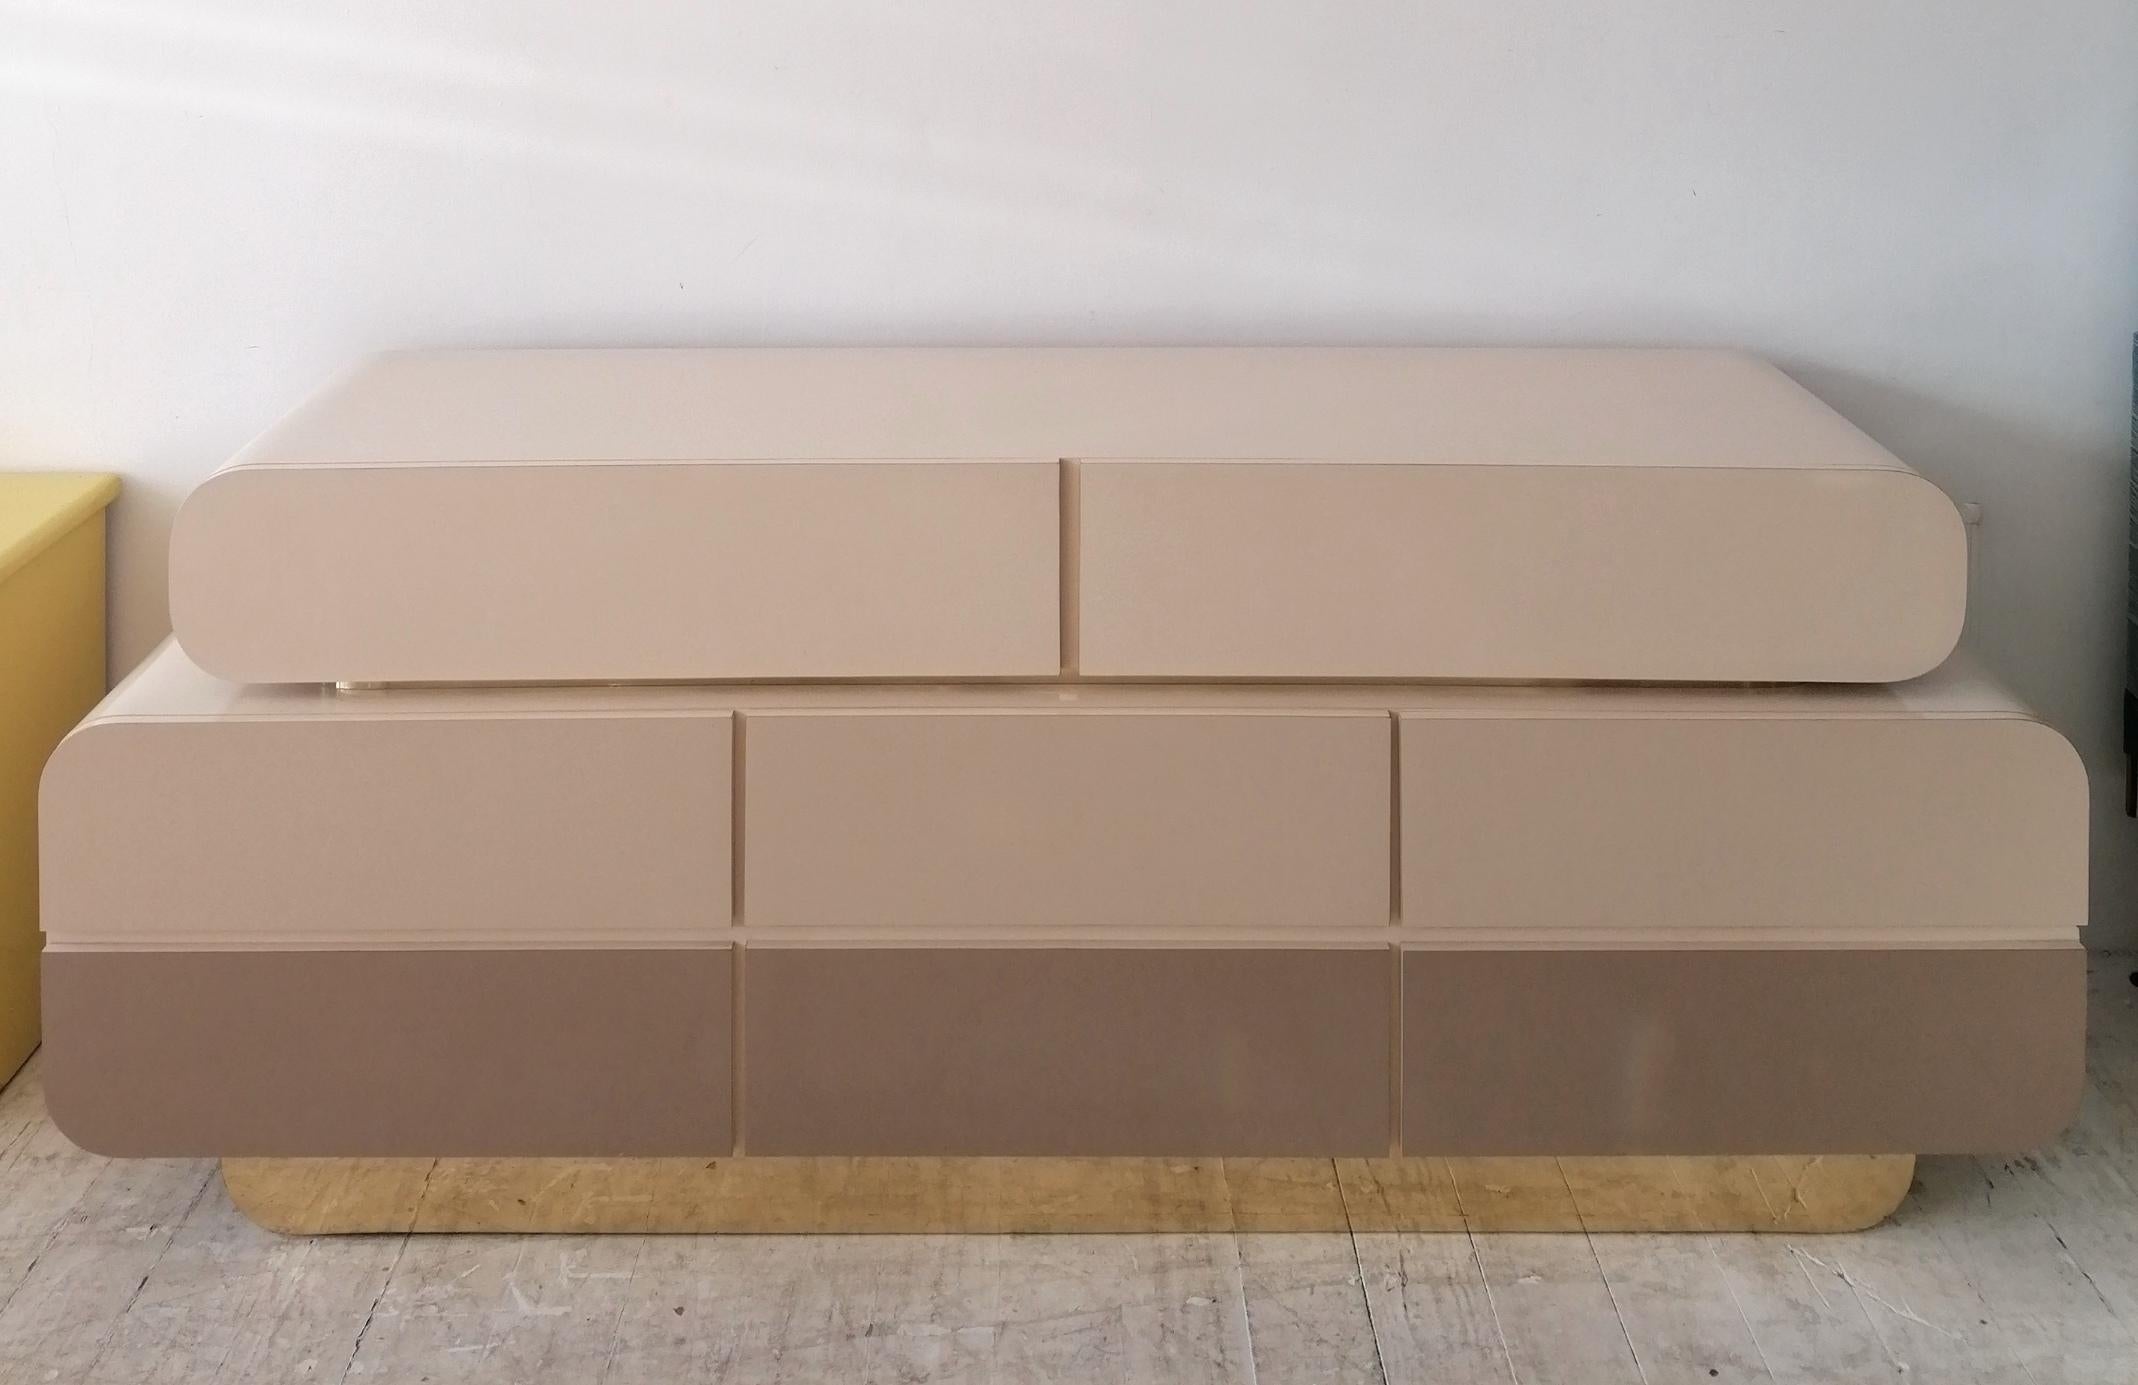 Buffet / buffet postmoderne inhabituel en forme de double cascade avec 8 tiroirs. La finition stratifiée est dans une palette neutre graduée : blanc cassé, beige et taupe, soulignée par une garniture en métal doré et un socle en métal doré. Une